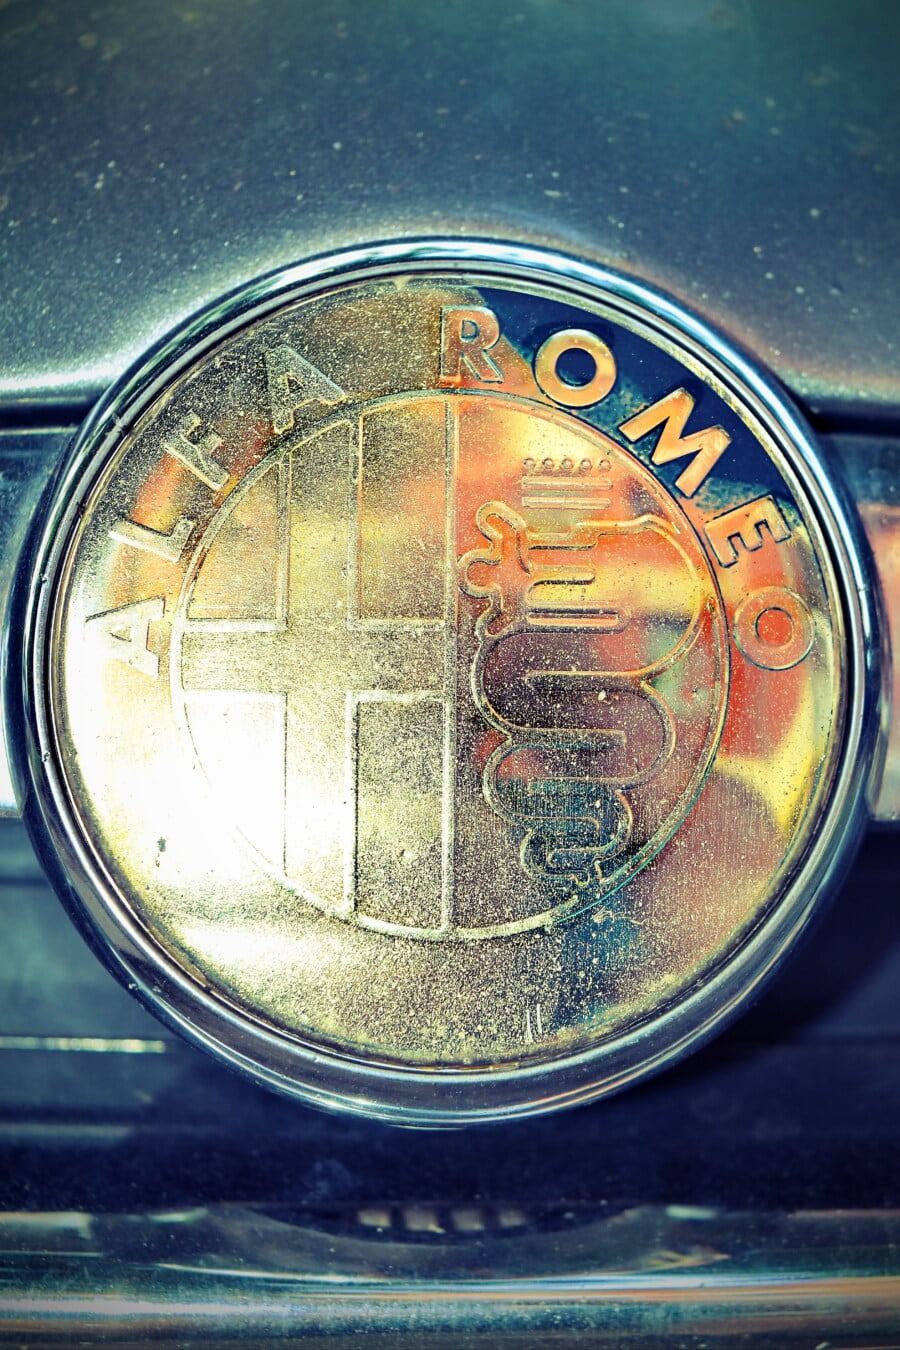 Alfa Romeo, sembol, işareti, parlak, altın parlaklık, Krom, metalik, parlayan, araba, araç